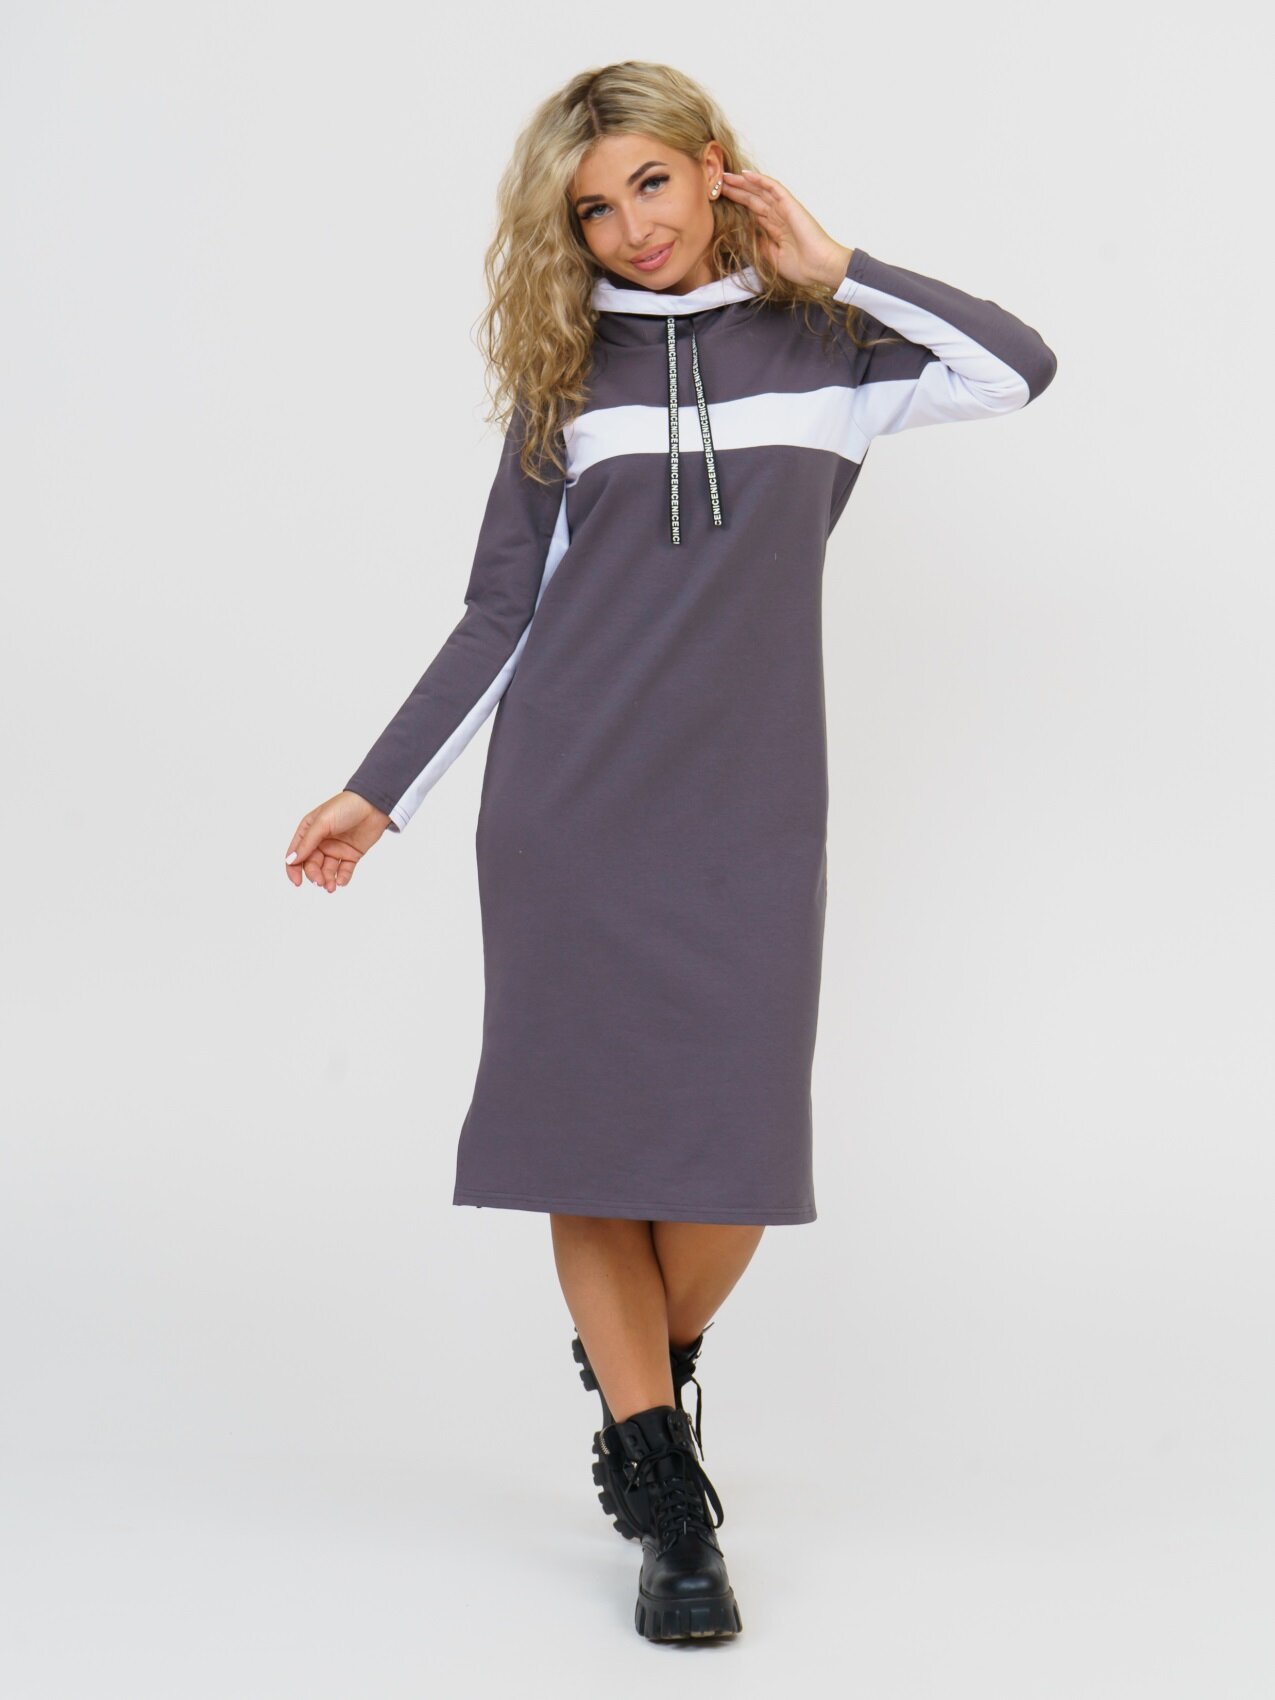 Платье-худи текстильное прямого фасона на осень стиль casual спорт-шик из футера с длинным рукавом большого размера